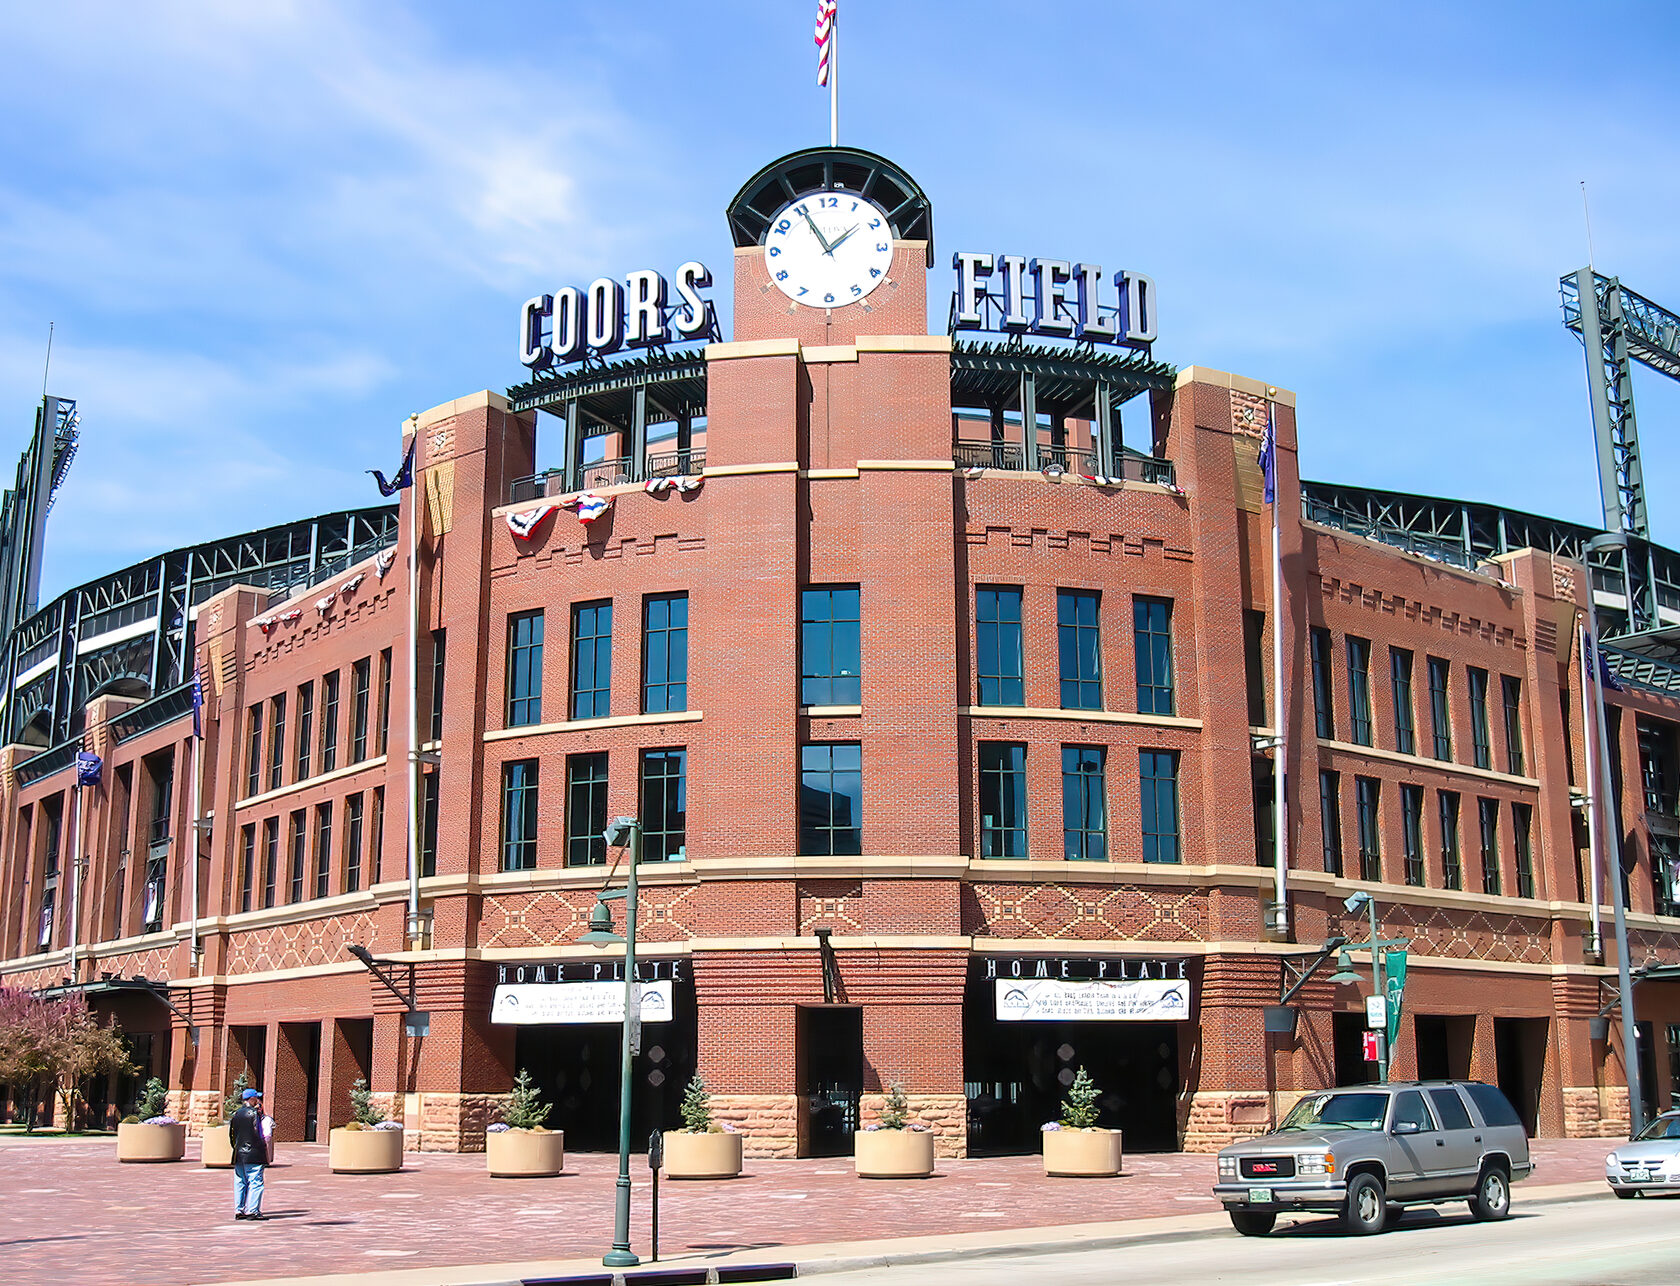 Coors Field: Stunning Baseball Stadium in Denver, Colorado